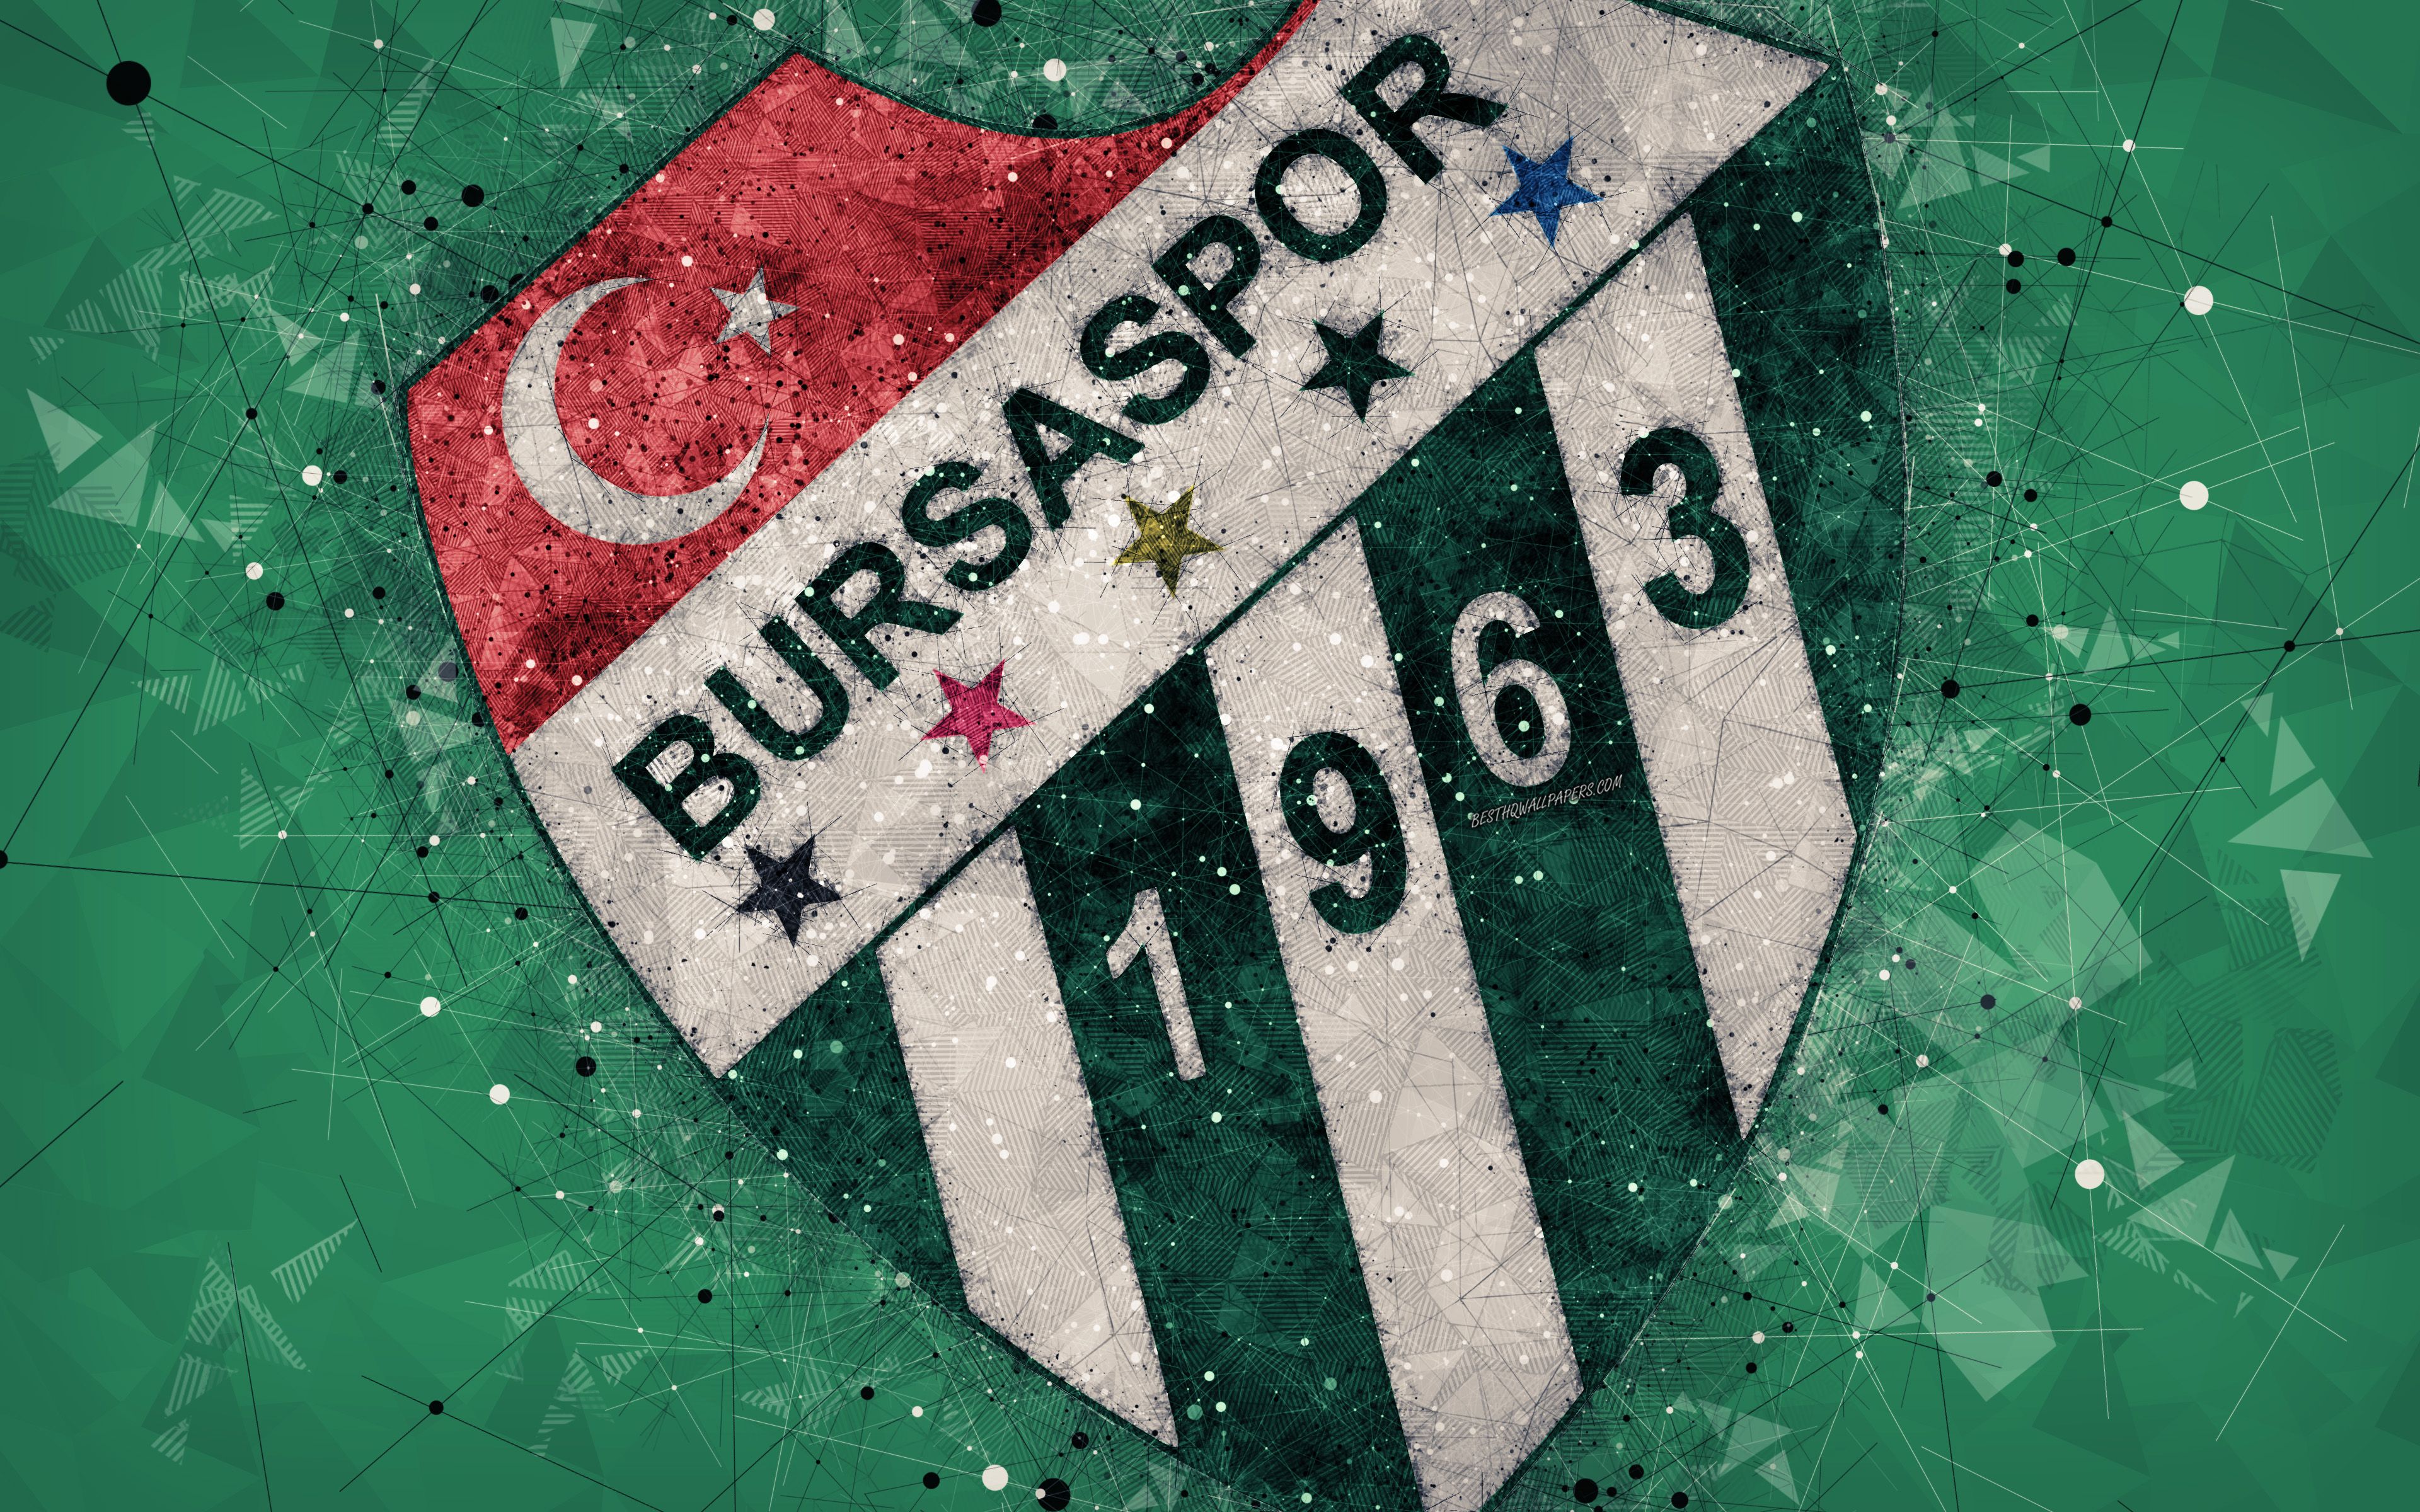 Bursaspor Wallpapers